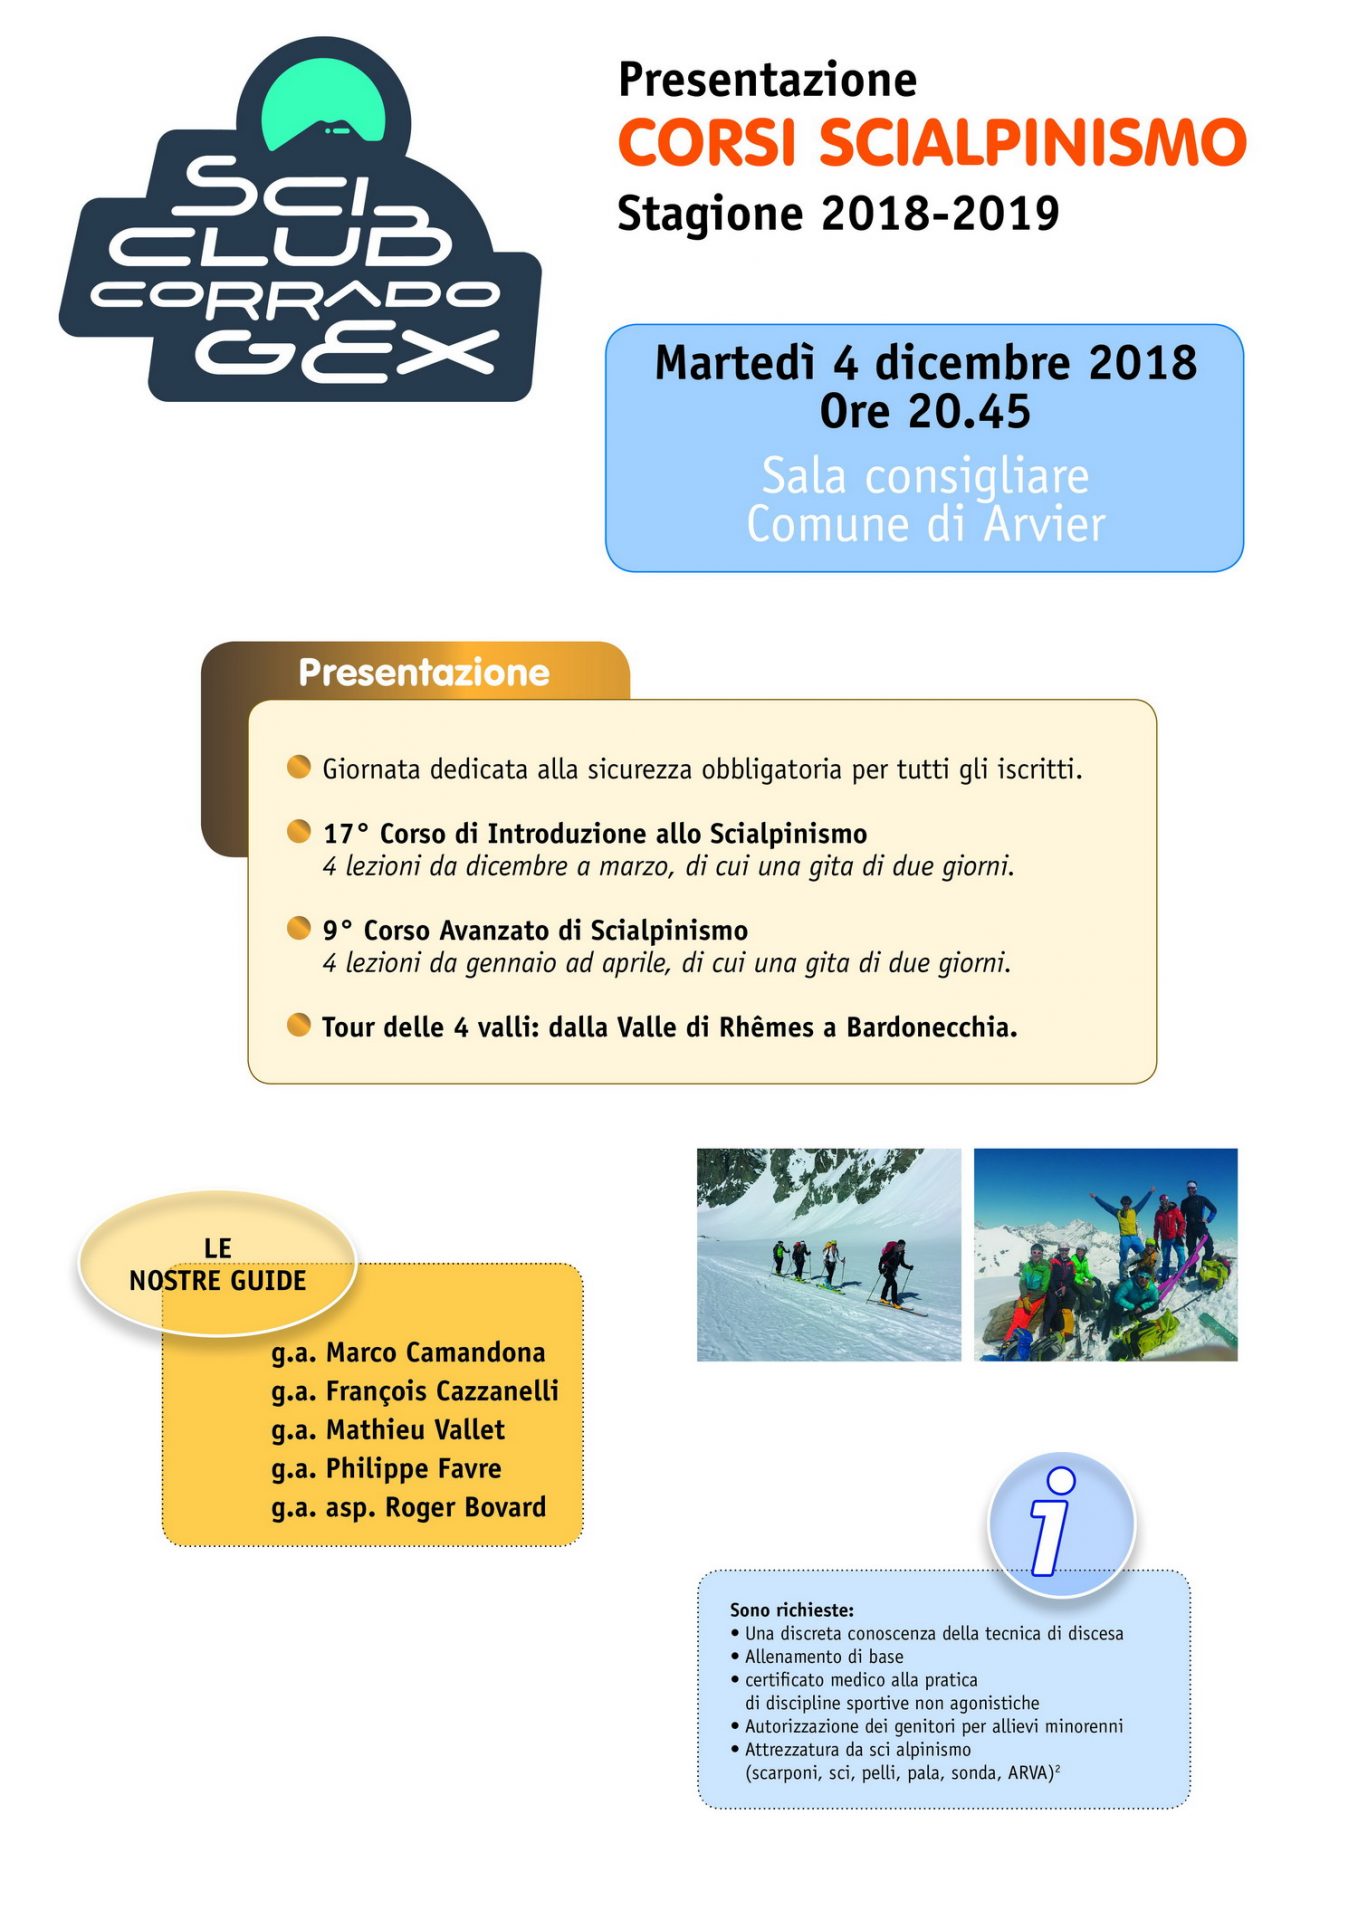 Presentazione attività stagione 2018-2019 Sci club Corrado Gex – Sezione sci alpinismo